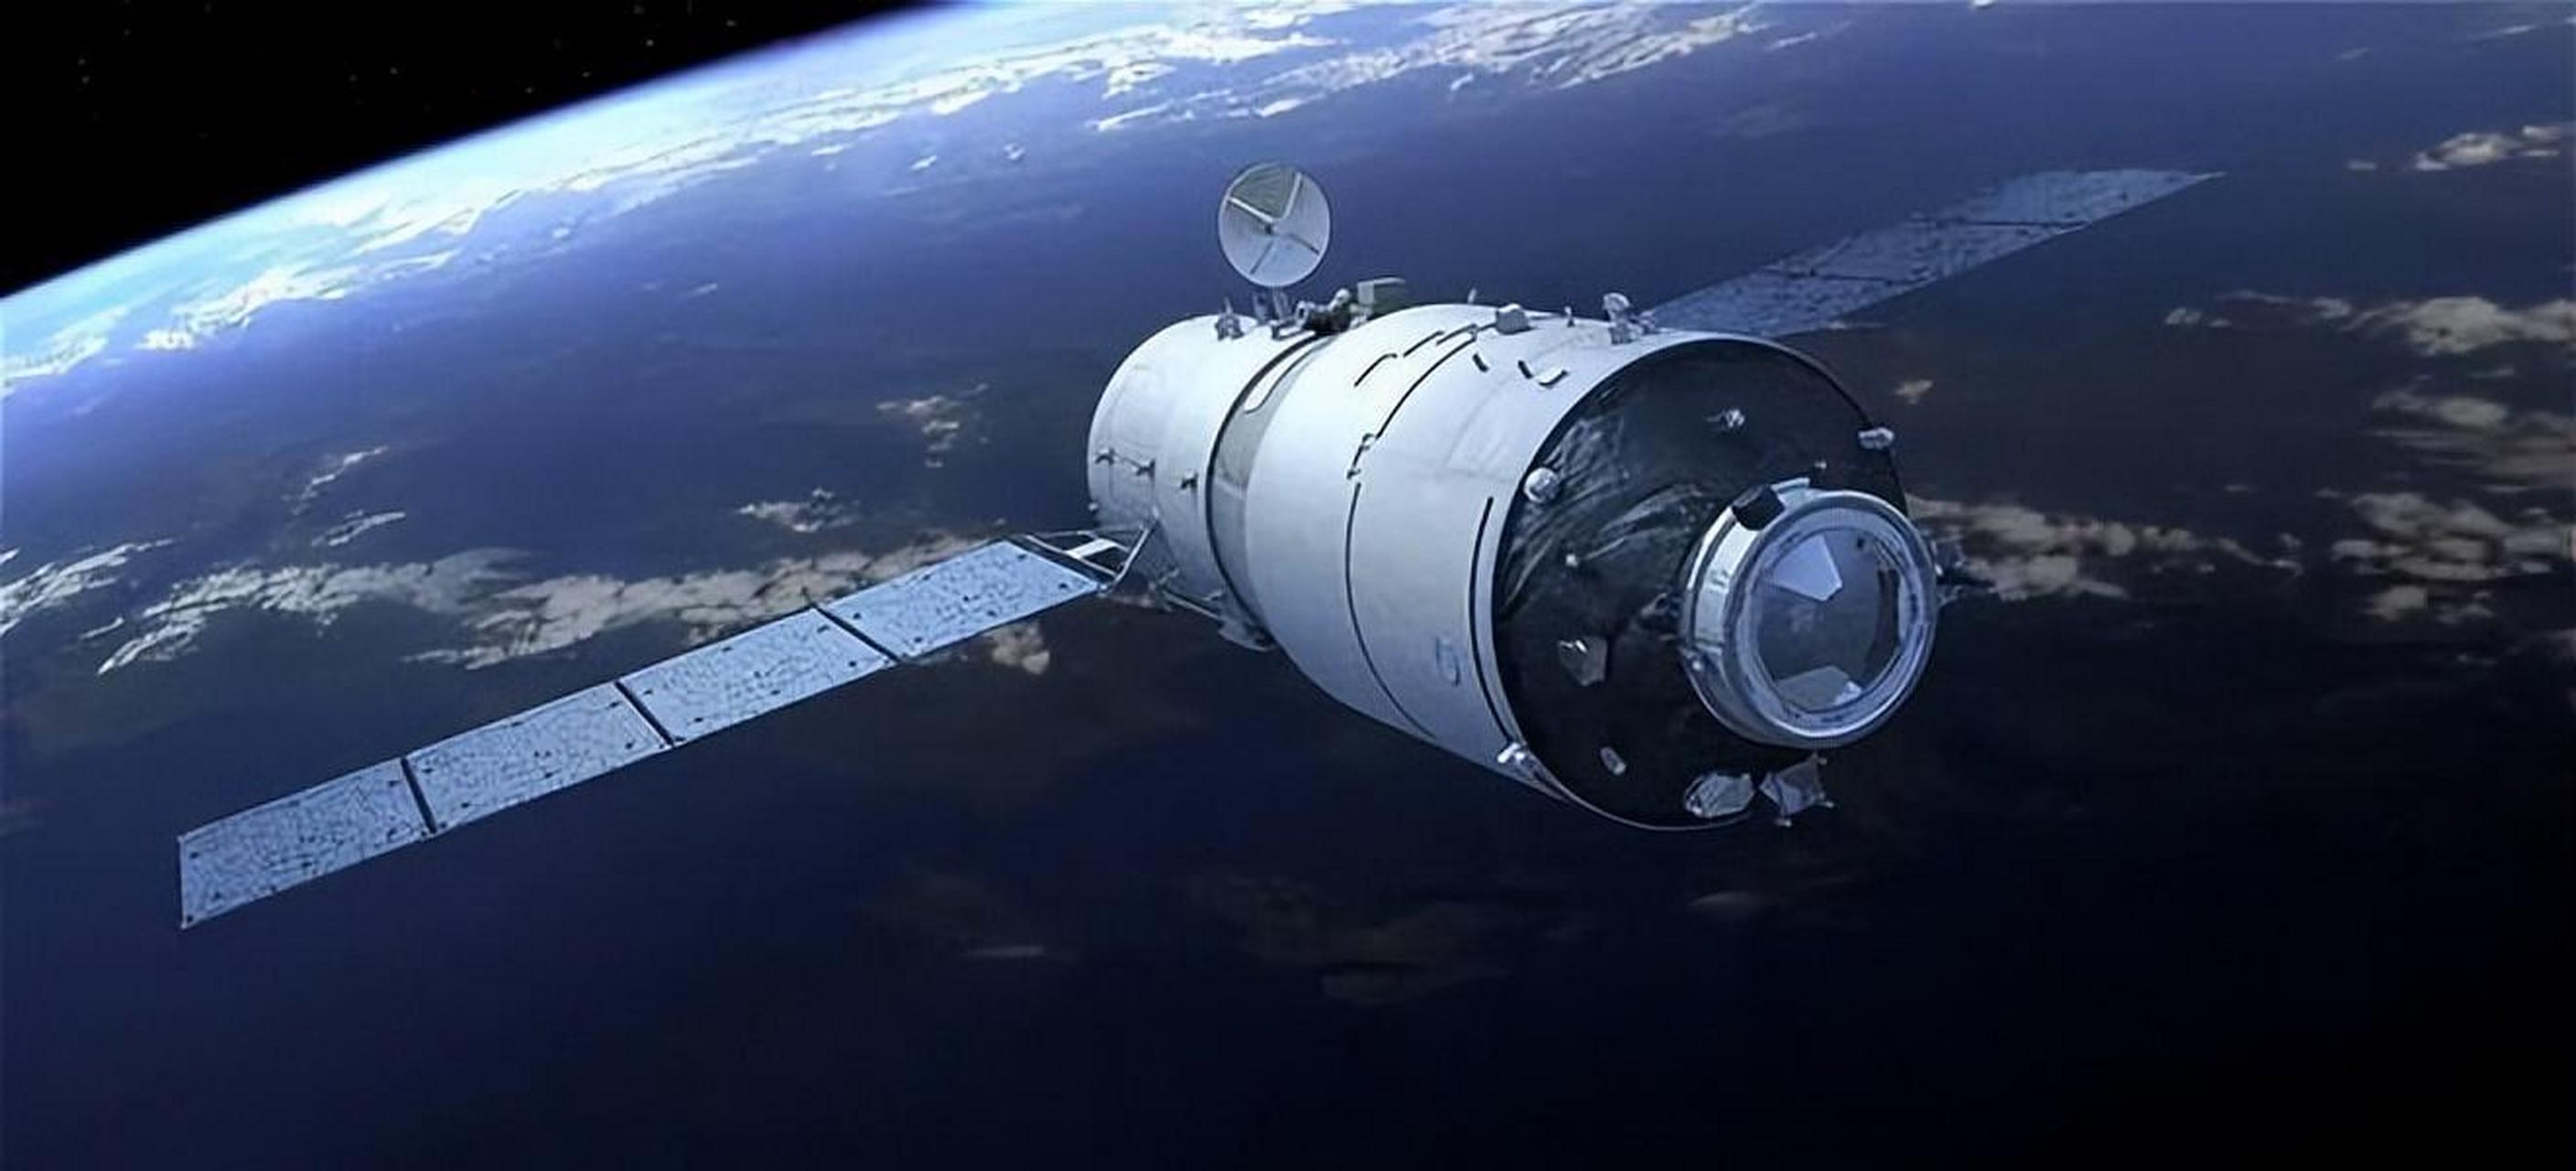 神舟十六号即将发射,标志着中国航天事业的又一次重大突破